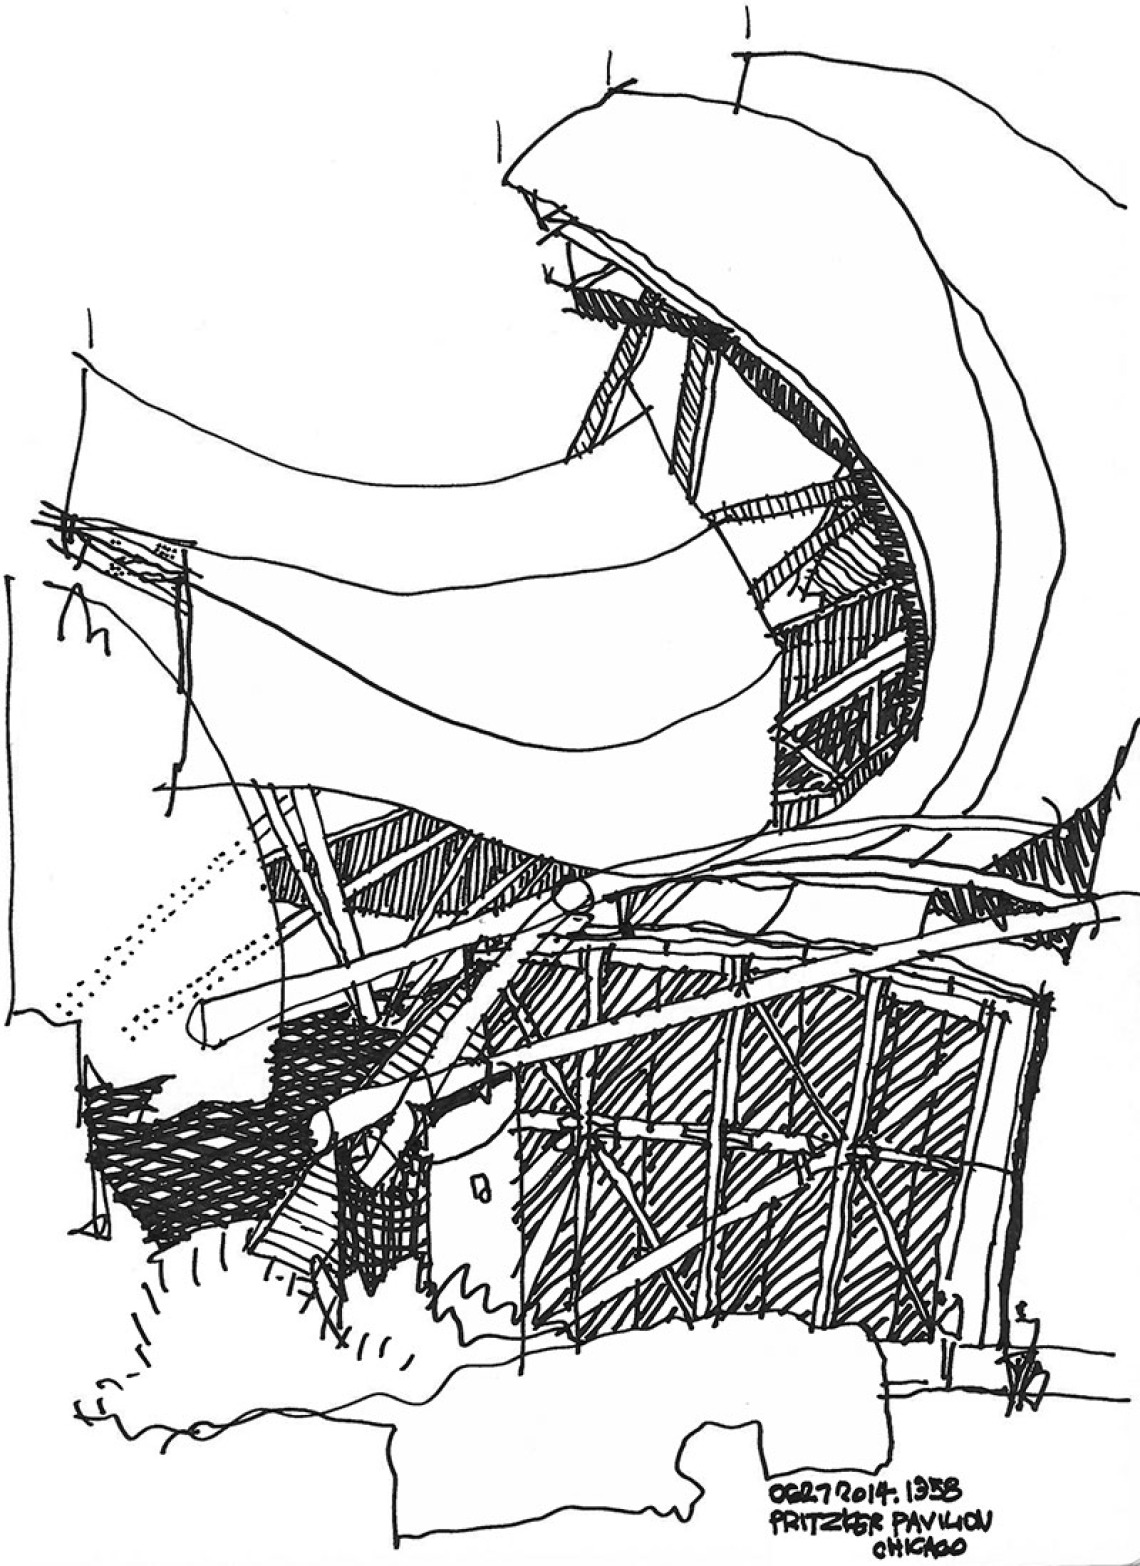 Drawing of Prtizker Pavilion by Robert Miller